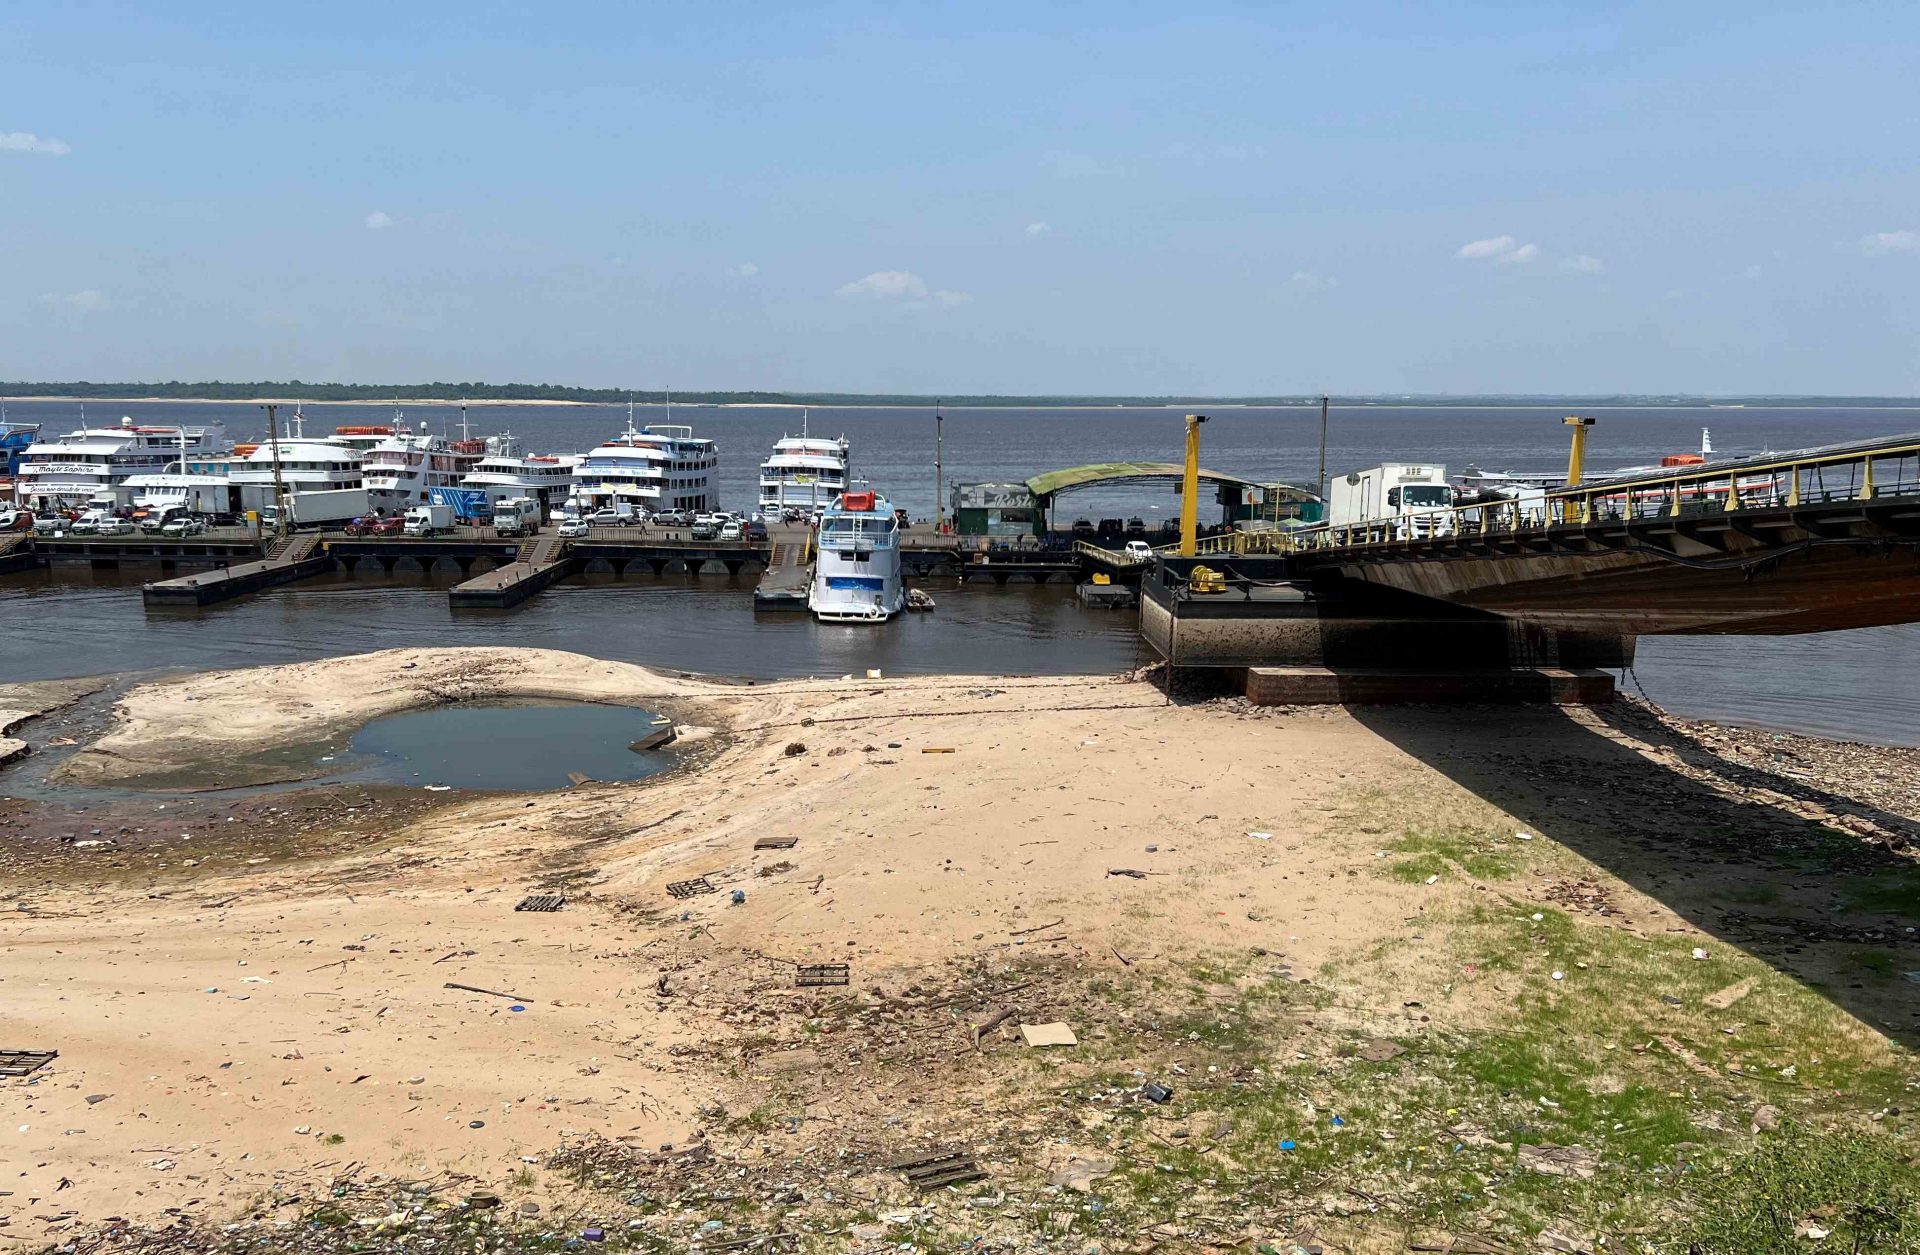 Passagens de barco podem sofrer aumento devido à seca no Amazonas